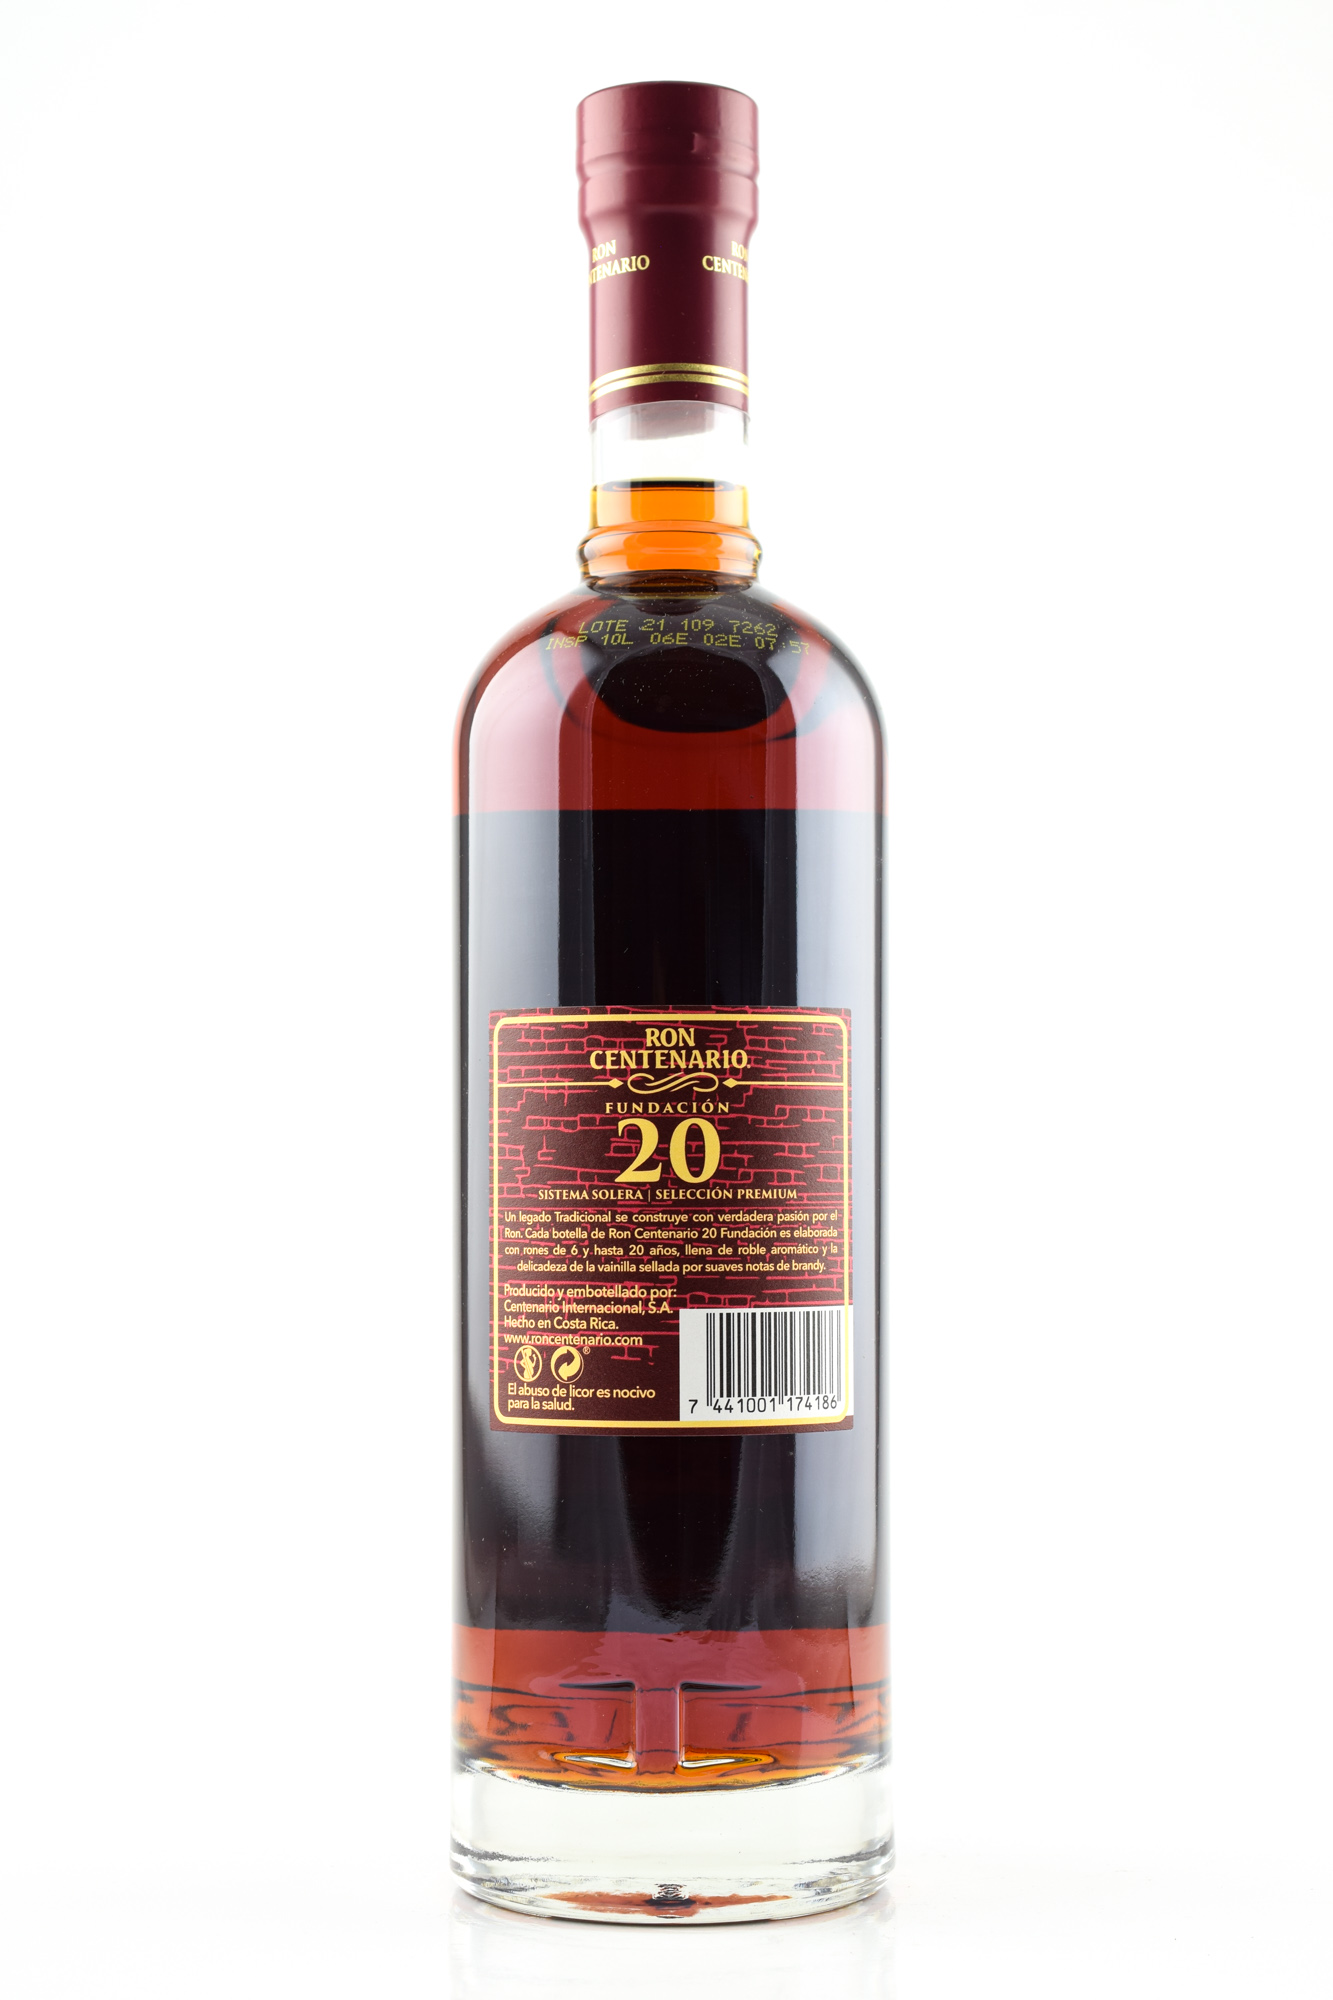 Home 40% of 0,7l by Malts Centenario Fundación | | | type Rum Ron Year Rum Rum Old | vol. 20